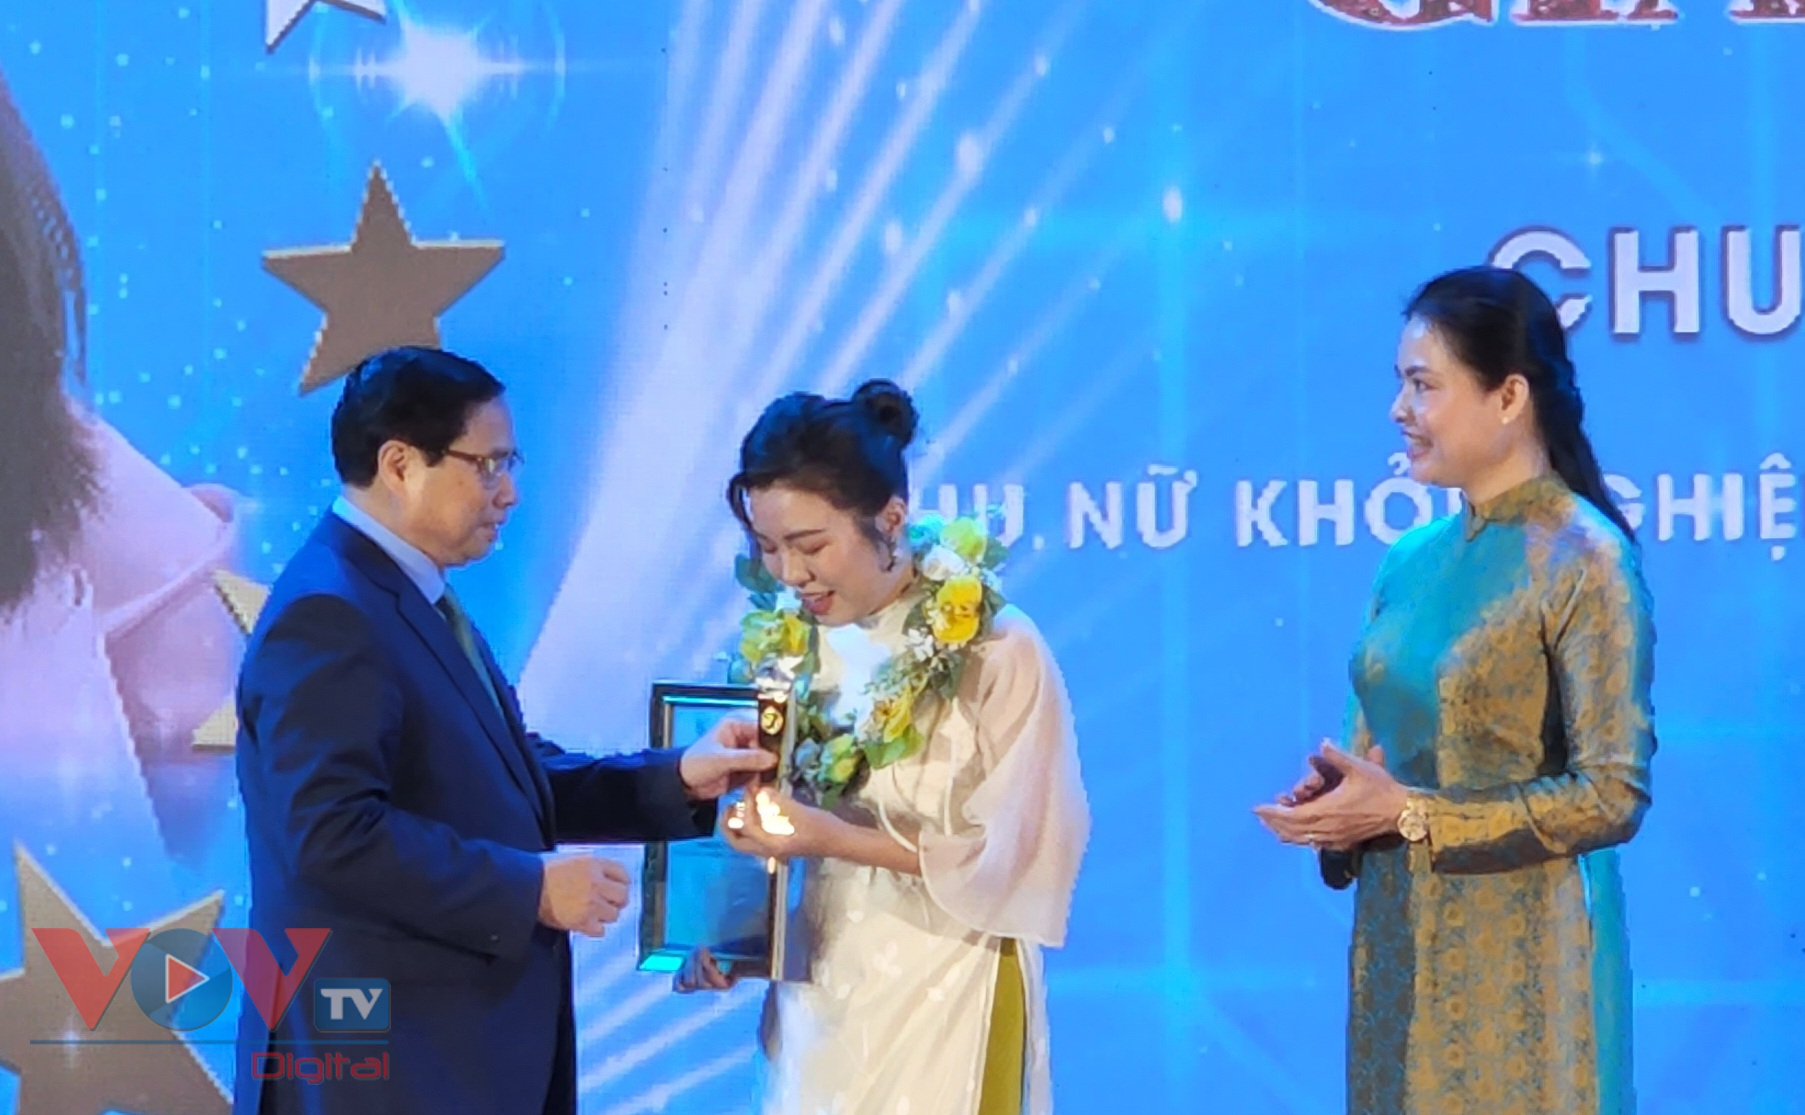 Thủ tướng Phạm Minh Chính dự lễ trao giải Chung kết toàn quốc Cuộc thi “Phụ nữ khởi nghiệp, phát huy tài năng nguyên bản địa” - Ảnh 5.